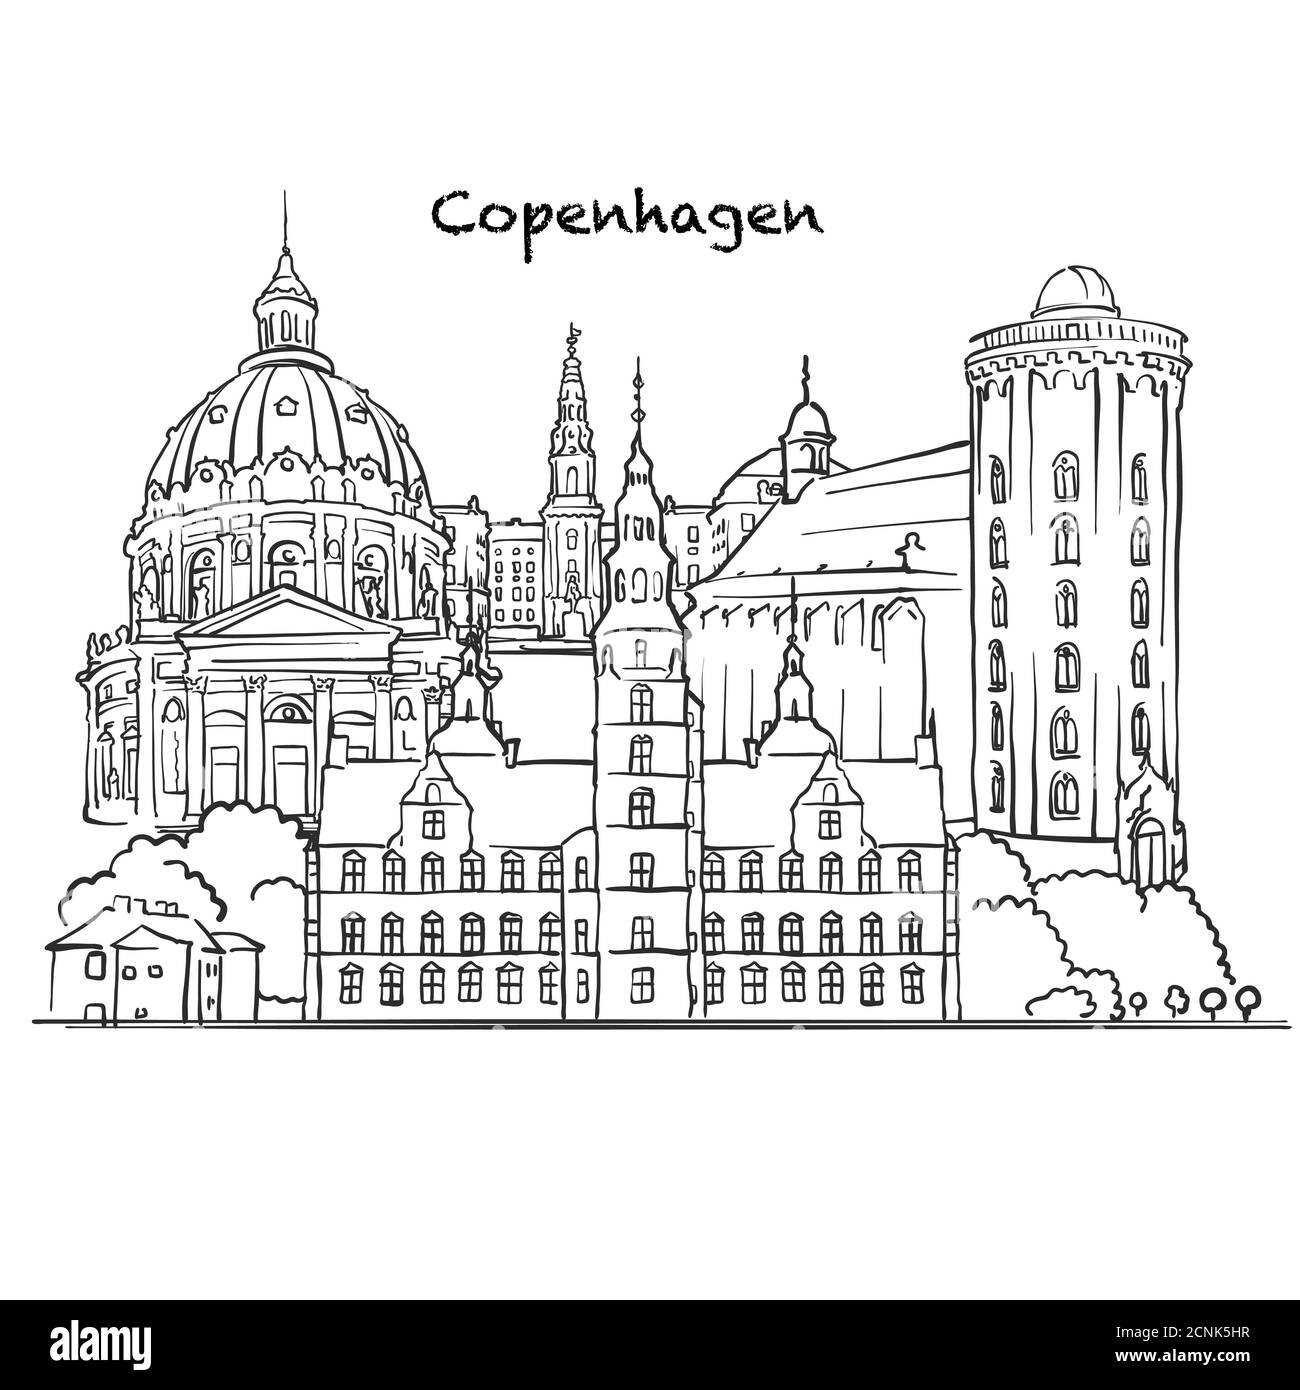 Famosi edifici di Copenhagen, composizione danese. Illustrazione vettoriale in bianco e nero disegnata a mano. Oggetti raggruppati e mobili. Illustrazione Vettoriale